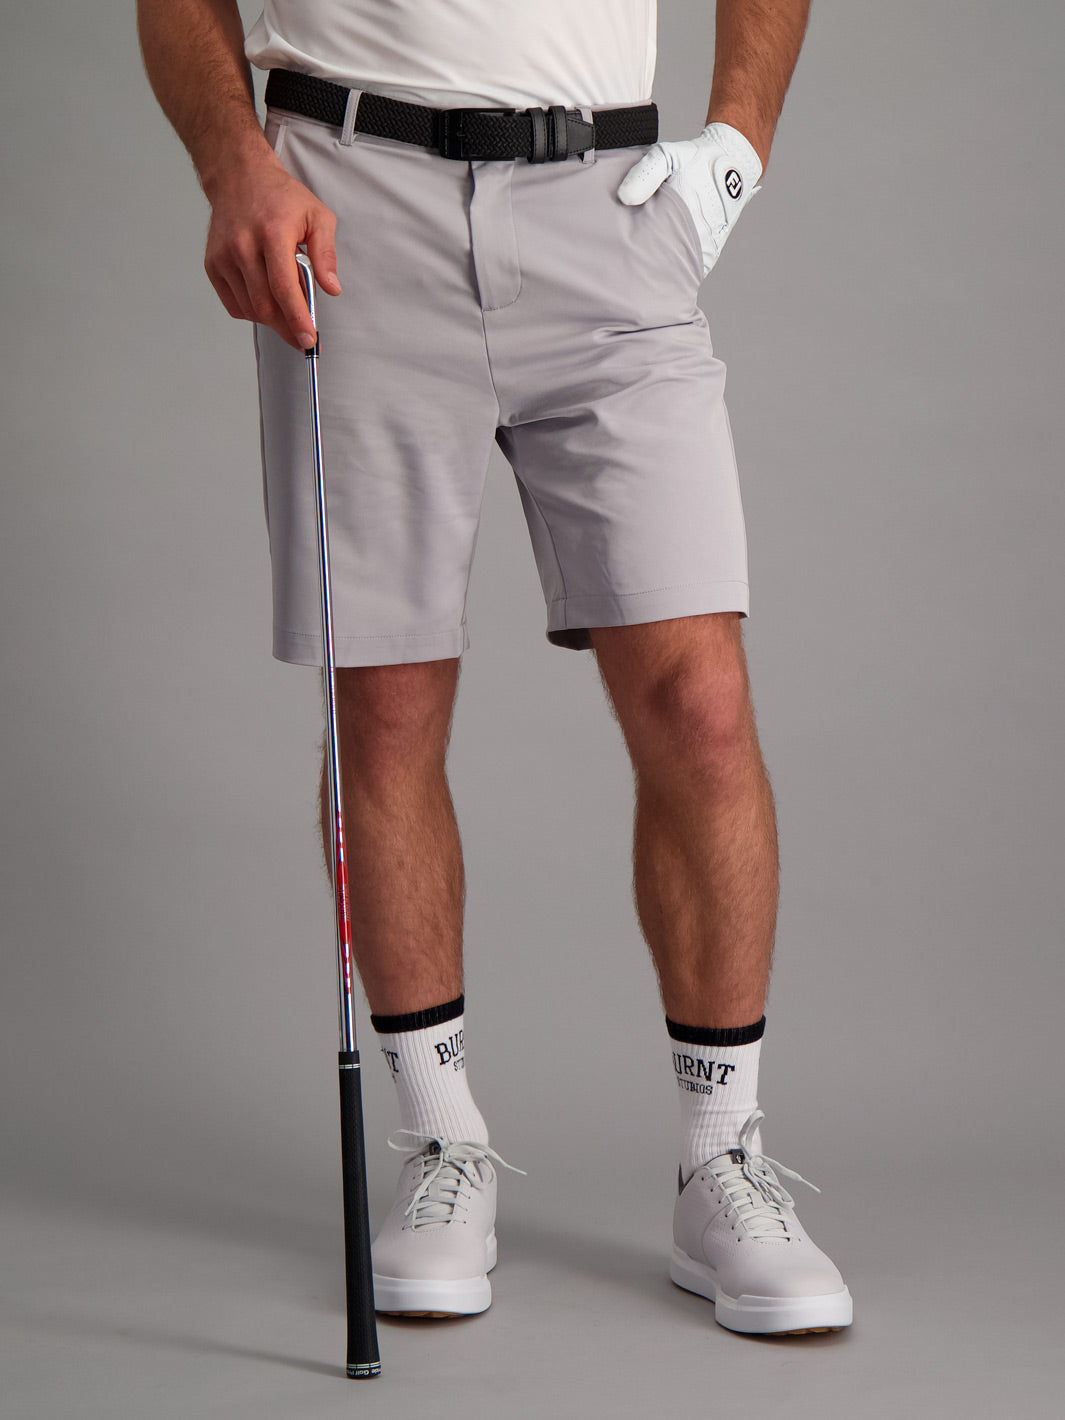 Mens Golf Shorts - Grey